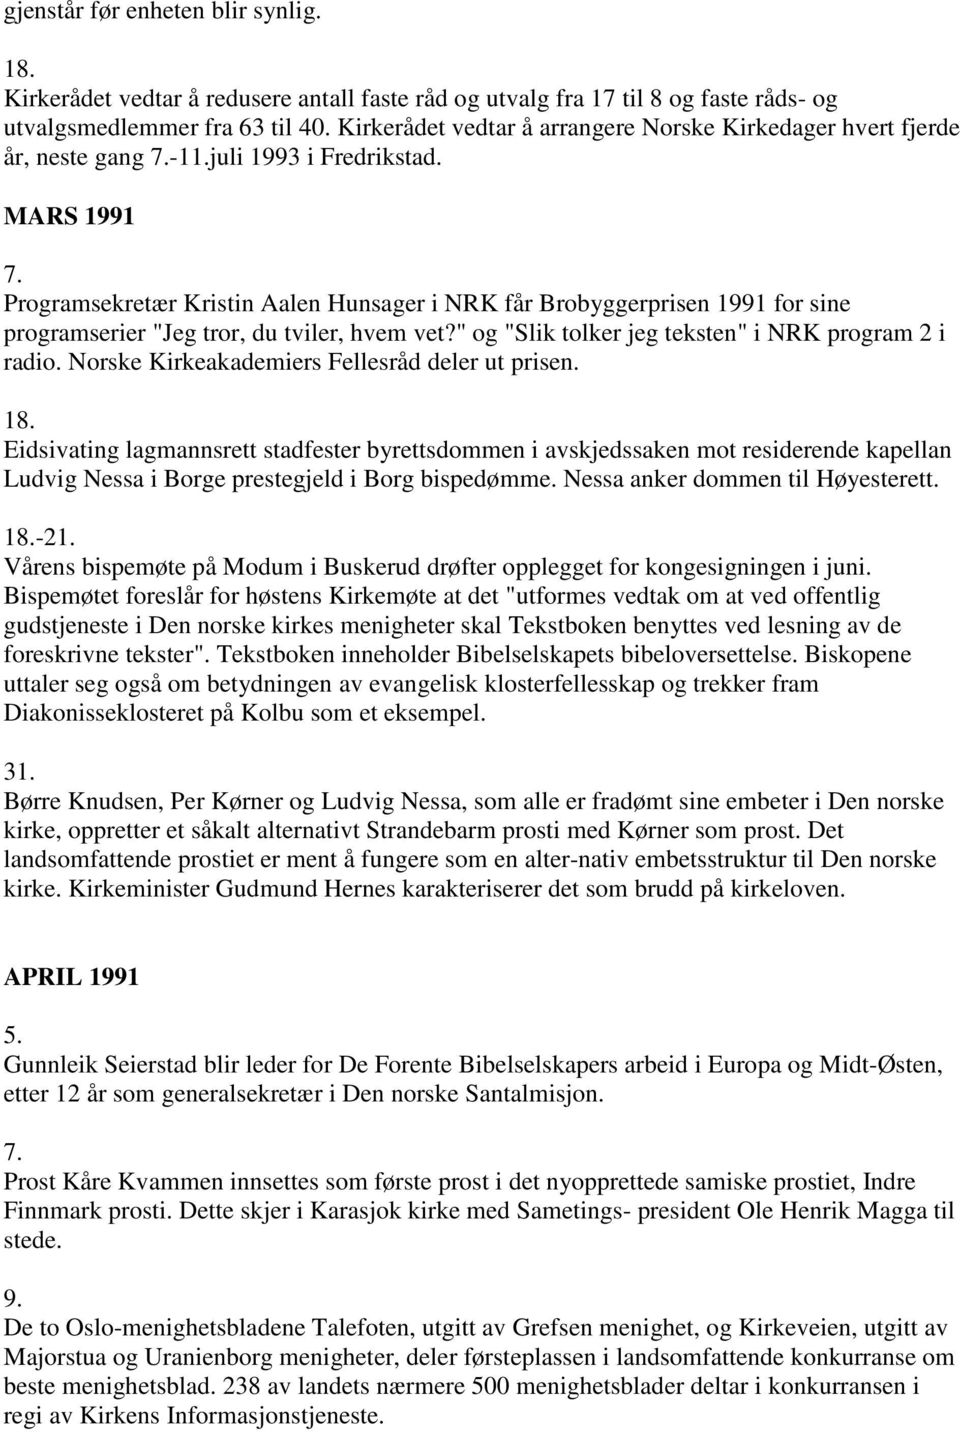 Programsekretær Kristin Aalen Hunsager i NRK får Brobyggerprisen 1991 for sine programserier "Jeg tror, du tviler, hvem vet?" og "Slik tolker jeg teksten" i NRK program 2 i radio.